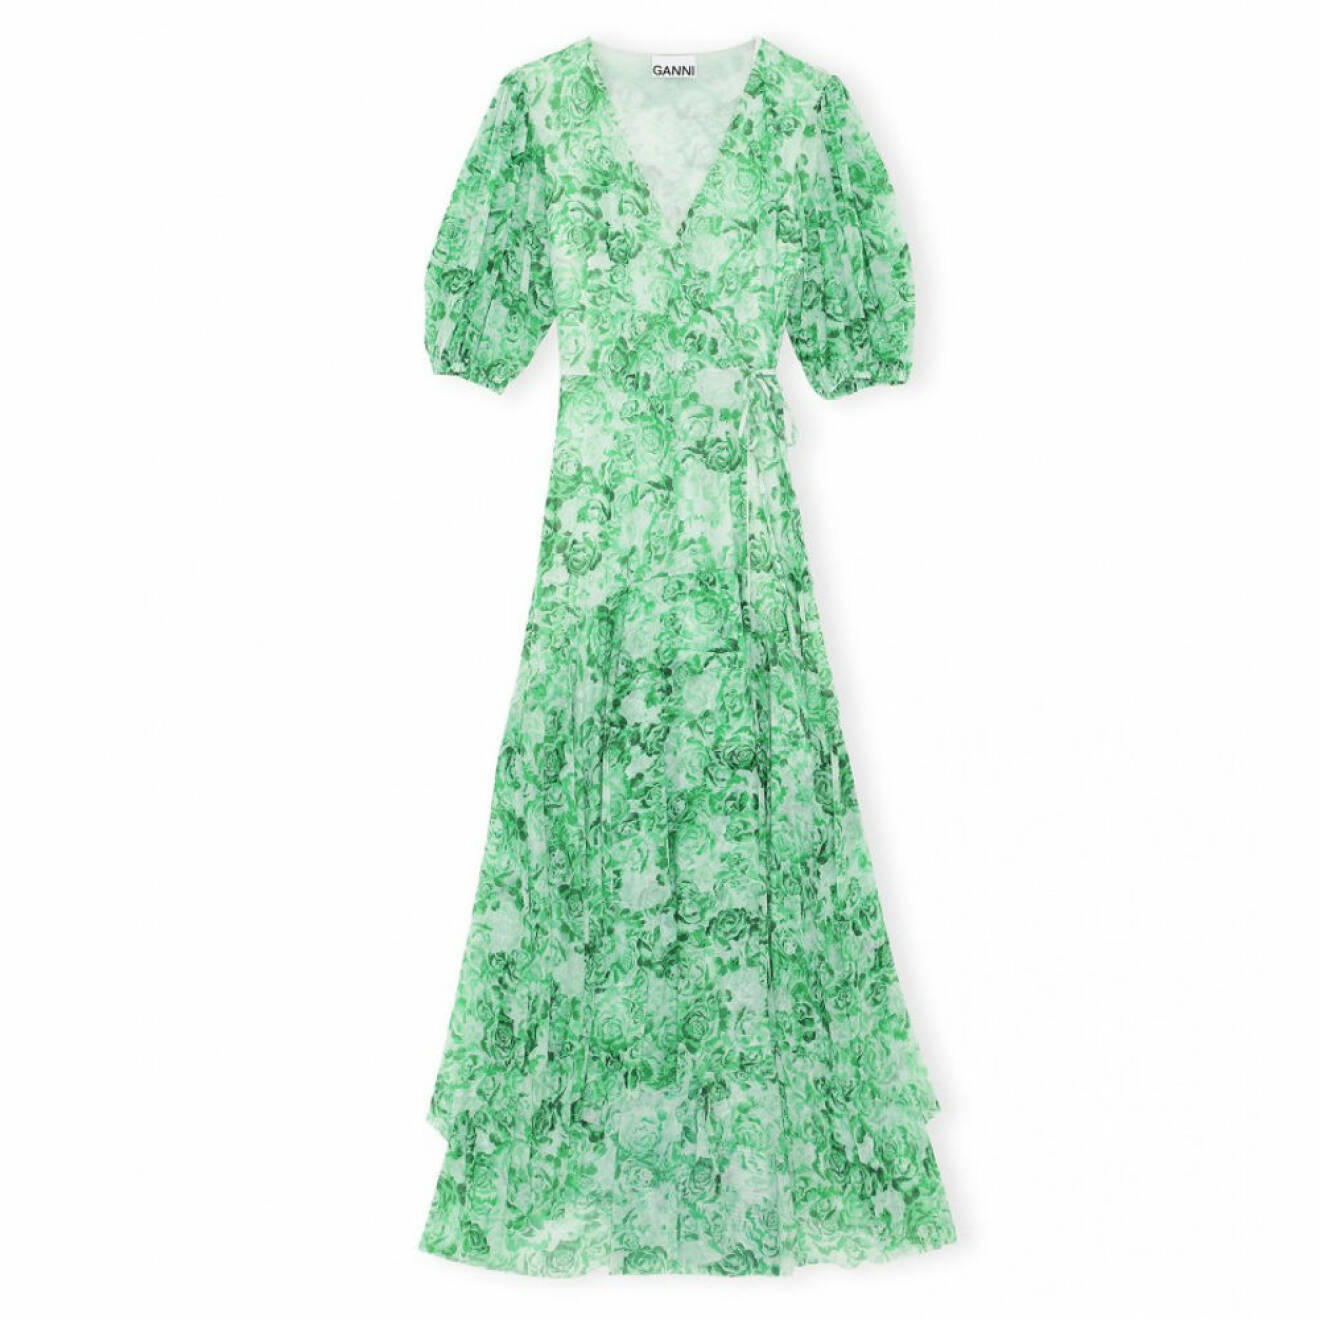 Grön ganni-klänning